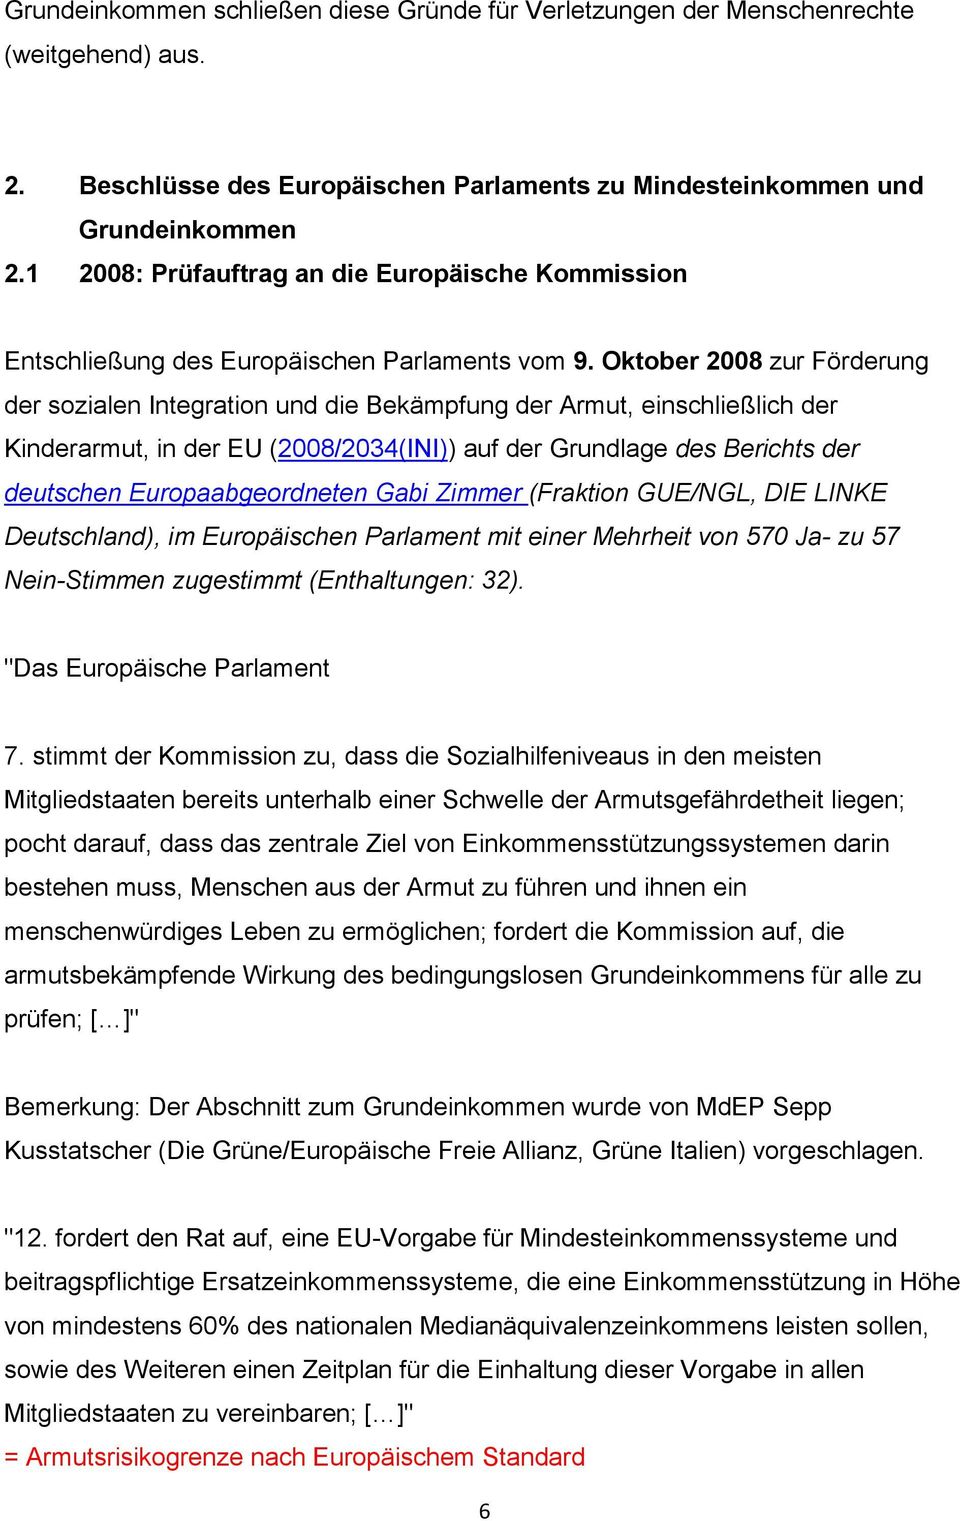 Oktober 2008 zur Förderung der sozialen Integration und die Bekämpfung der Armut, einschließlich der Kinderarmut, in der EU (2008/2034(INI)) auf der Grundlage des Berichts der deutschen